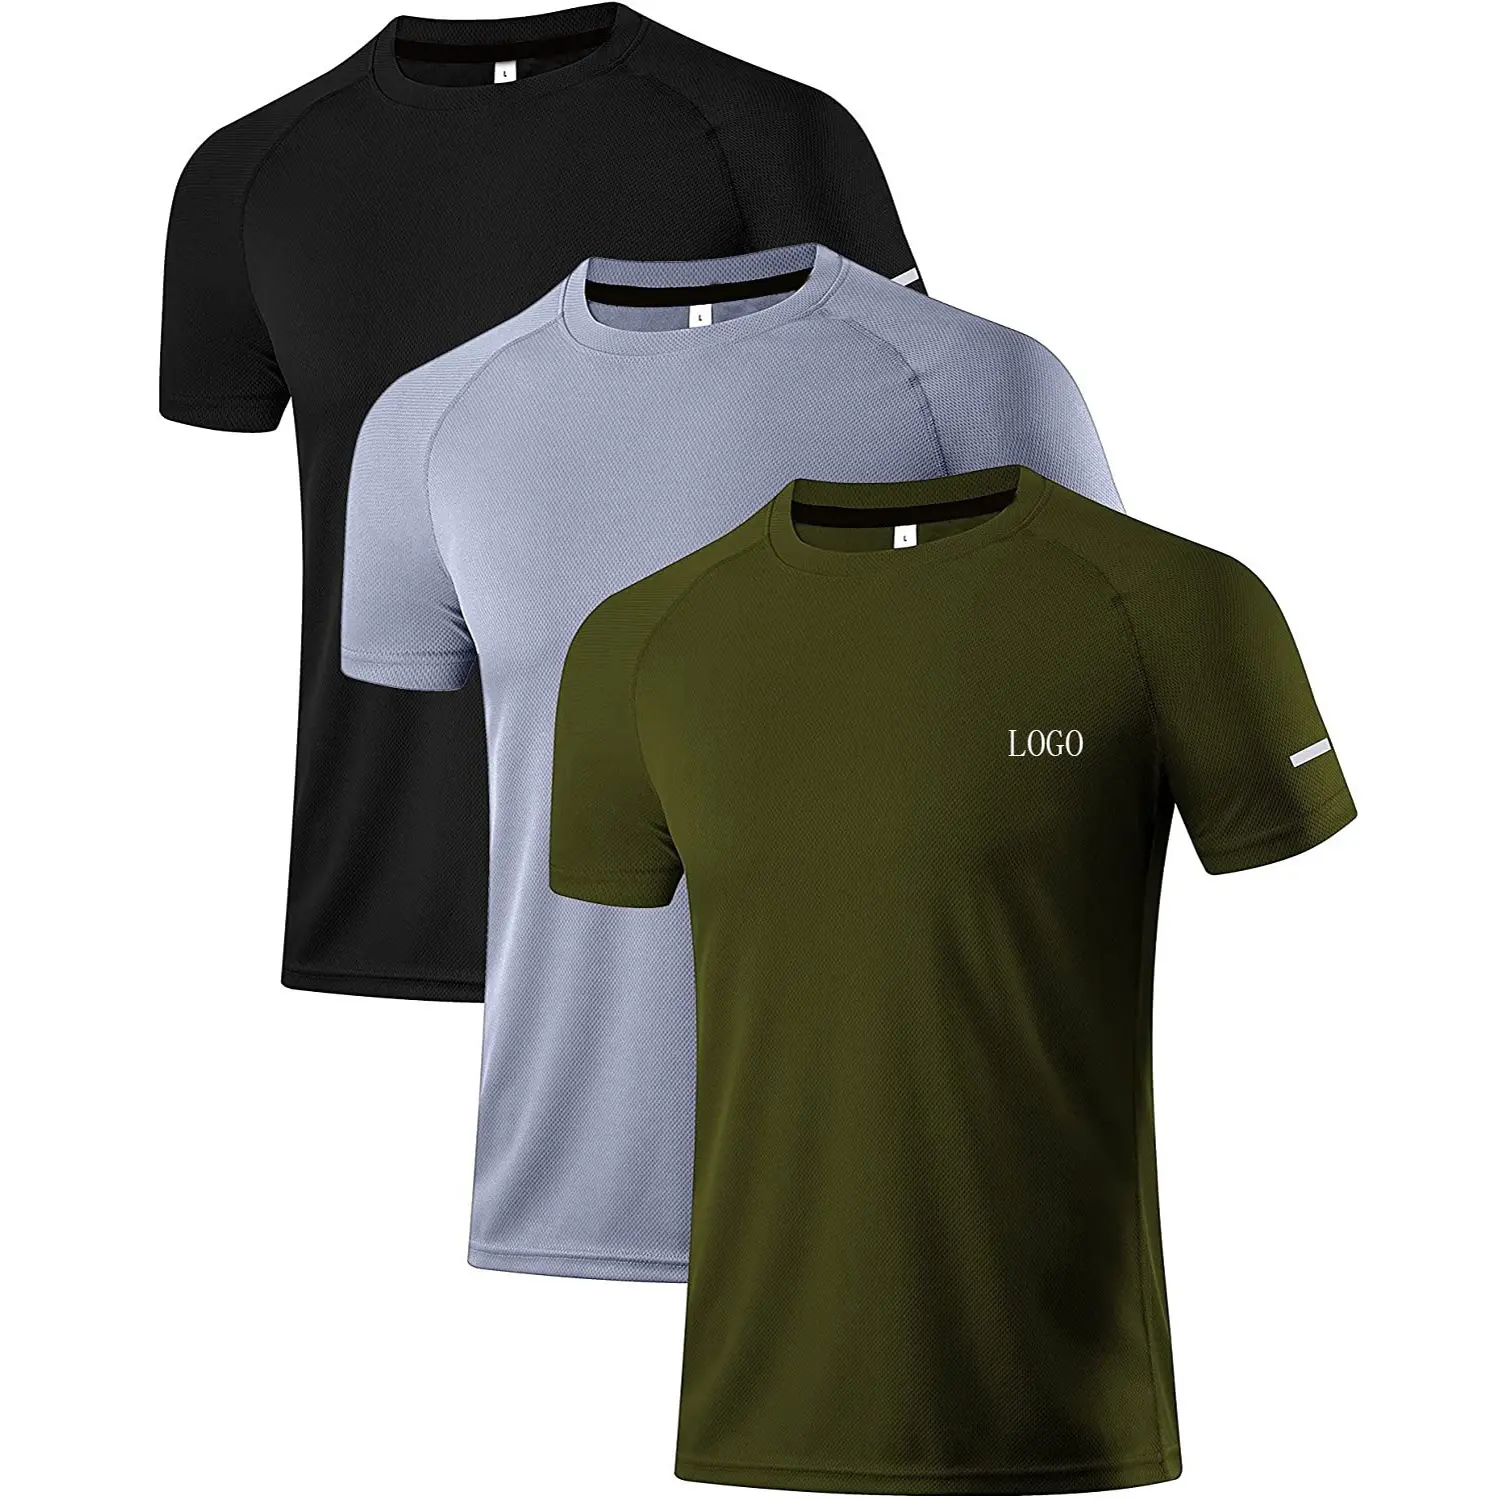 कस्टम रागलाण आस्तीन टी शर्ट पुरुषों खेलों शर्ट कसरत कपड़े जिम एथलेटिक पहनने लोचदार जाल के लिए टीशर्ट पुरुषों स्टाइलिश 2021